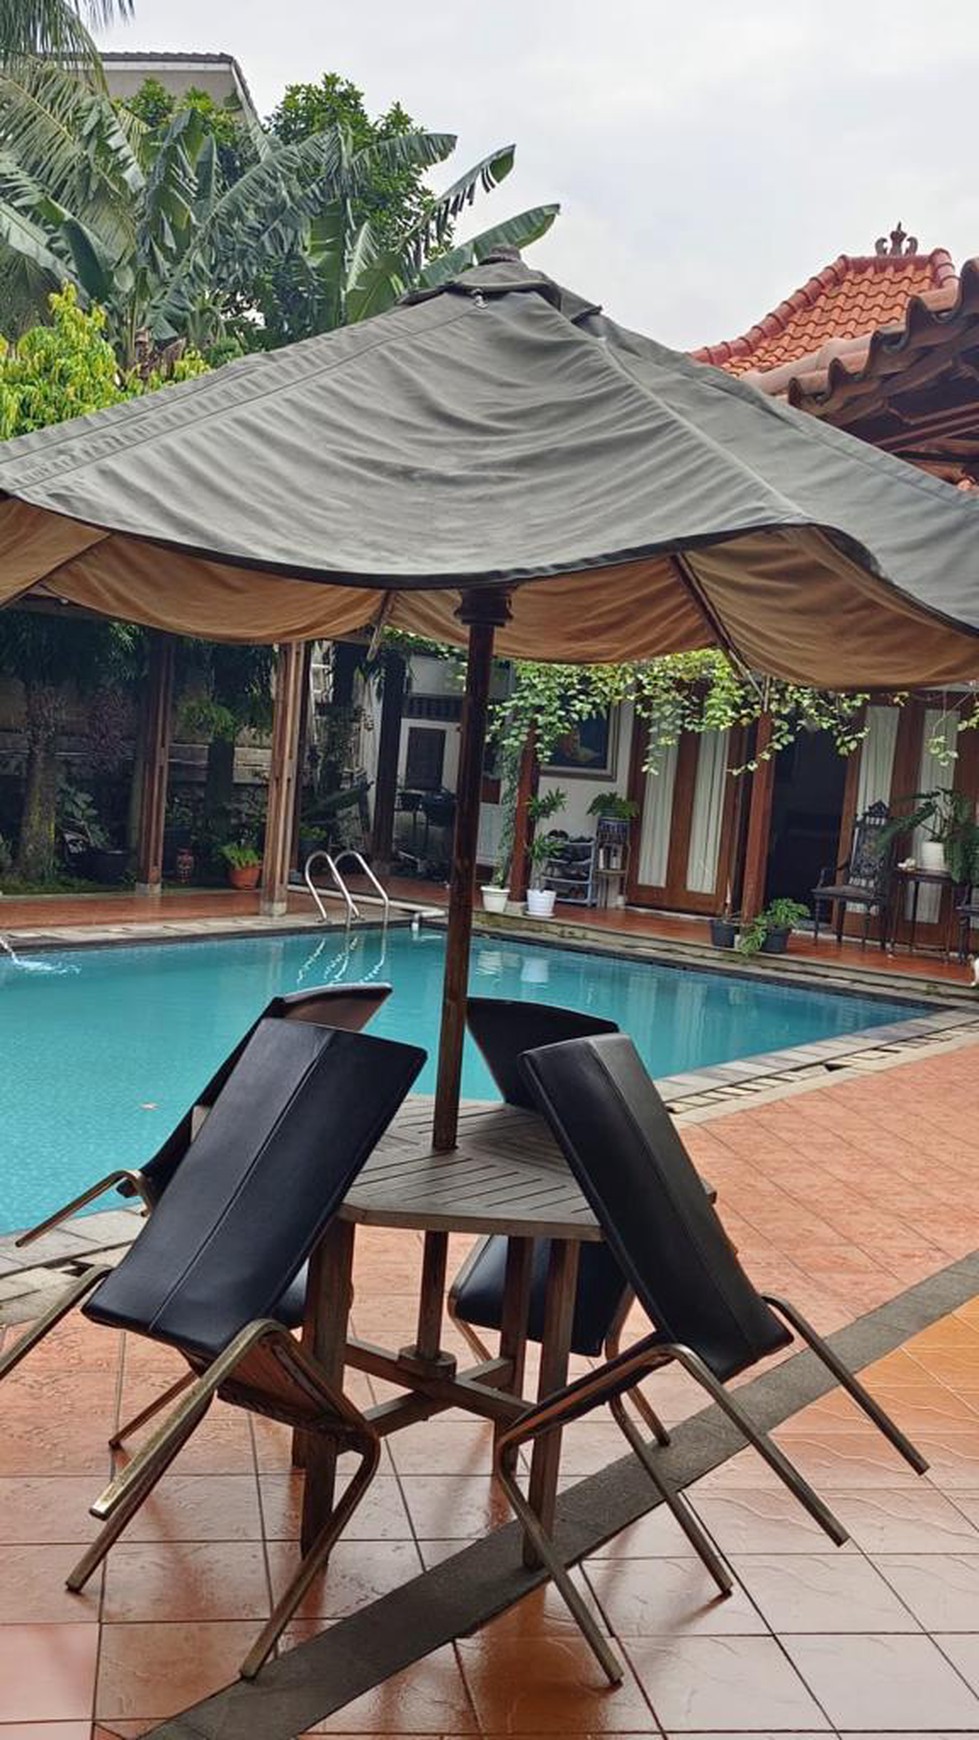 Rumah Cantik, Luxury, dengan Private Swimming Pool, dalam Cluster di Bintaro Sektor 9